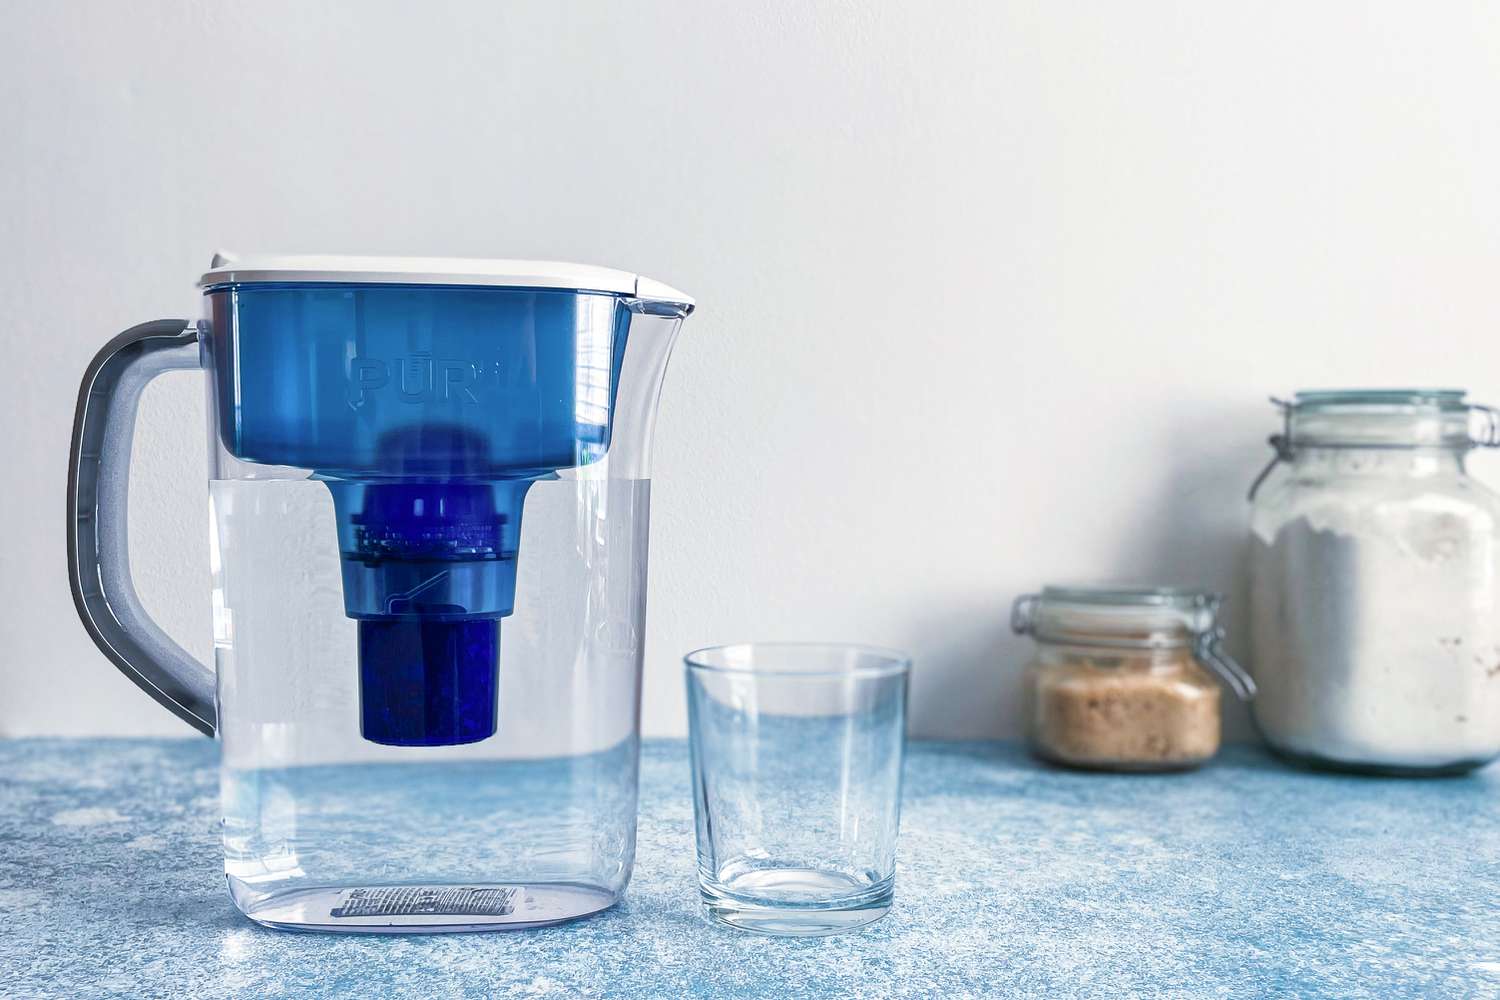 空玻璃杯旁边放着一个装满水的滤水罐